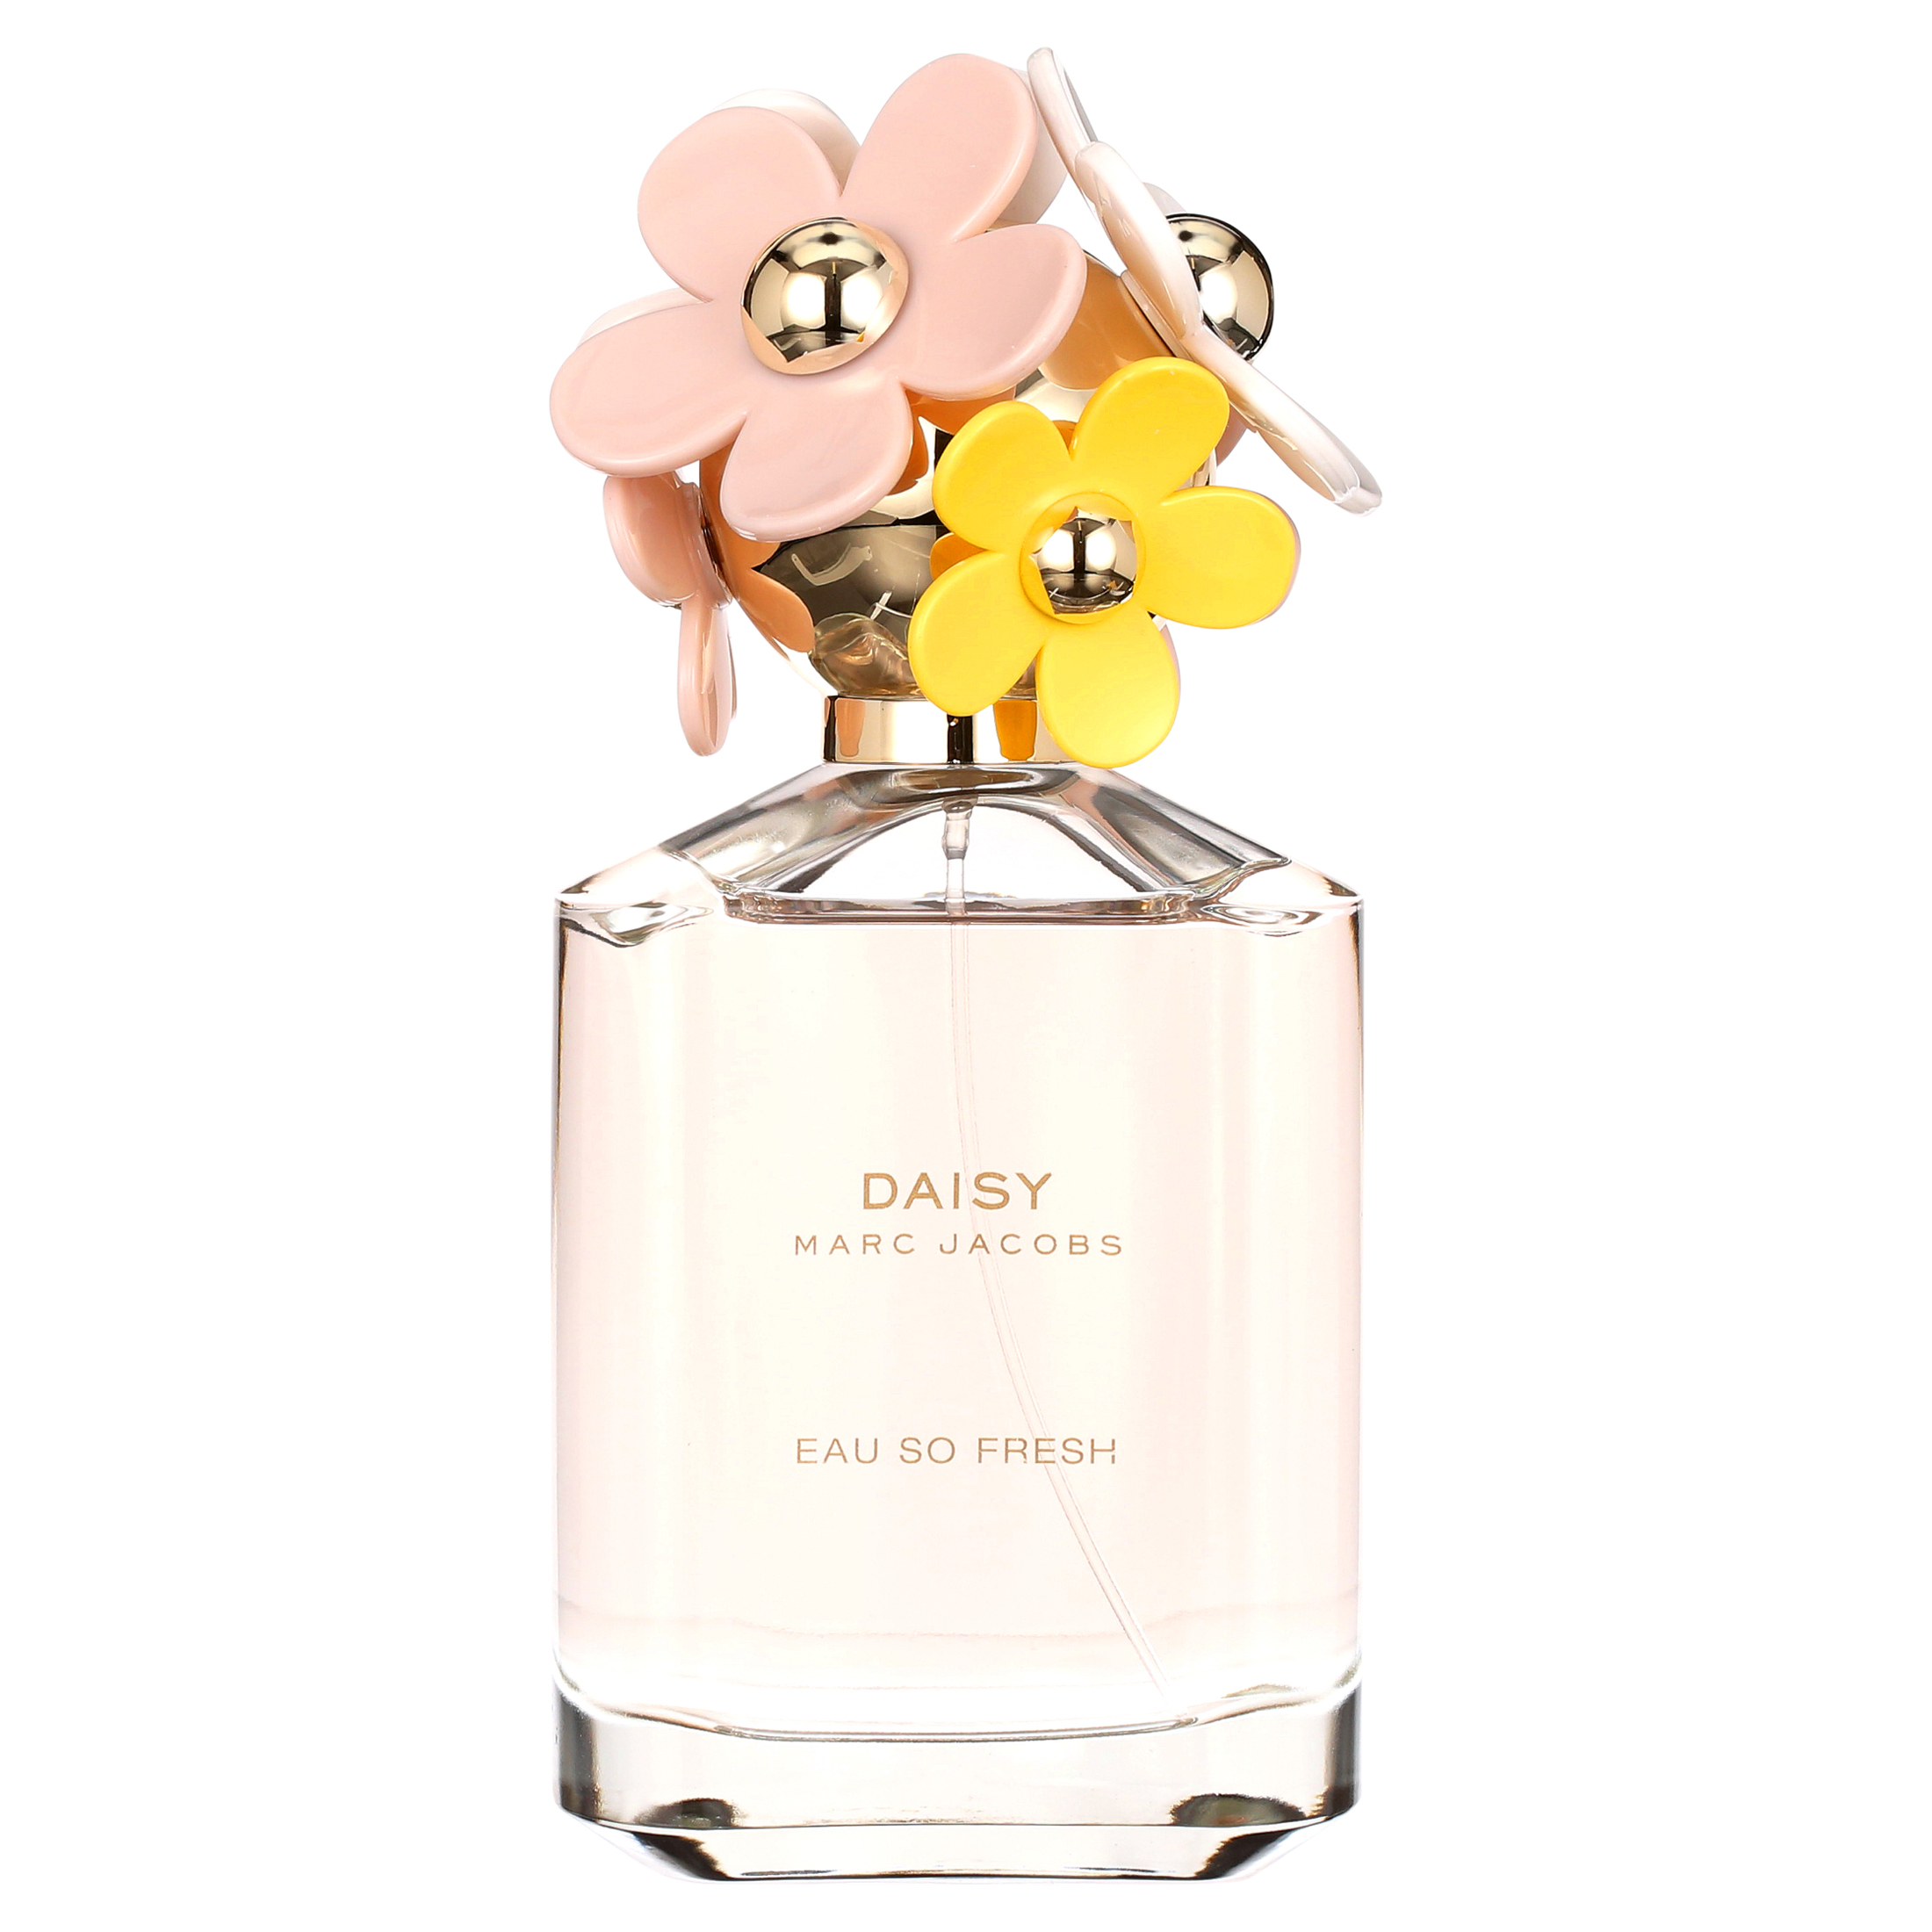 Marc Jacobs Daisy Eau So Fresh Eau de Toilette, Perfume for Women, 4.2 oz - image 2 of 5